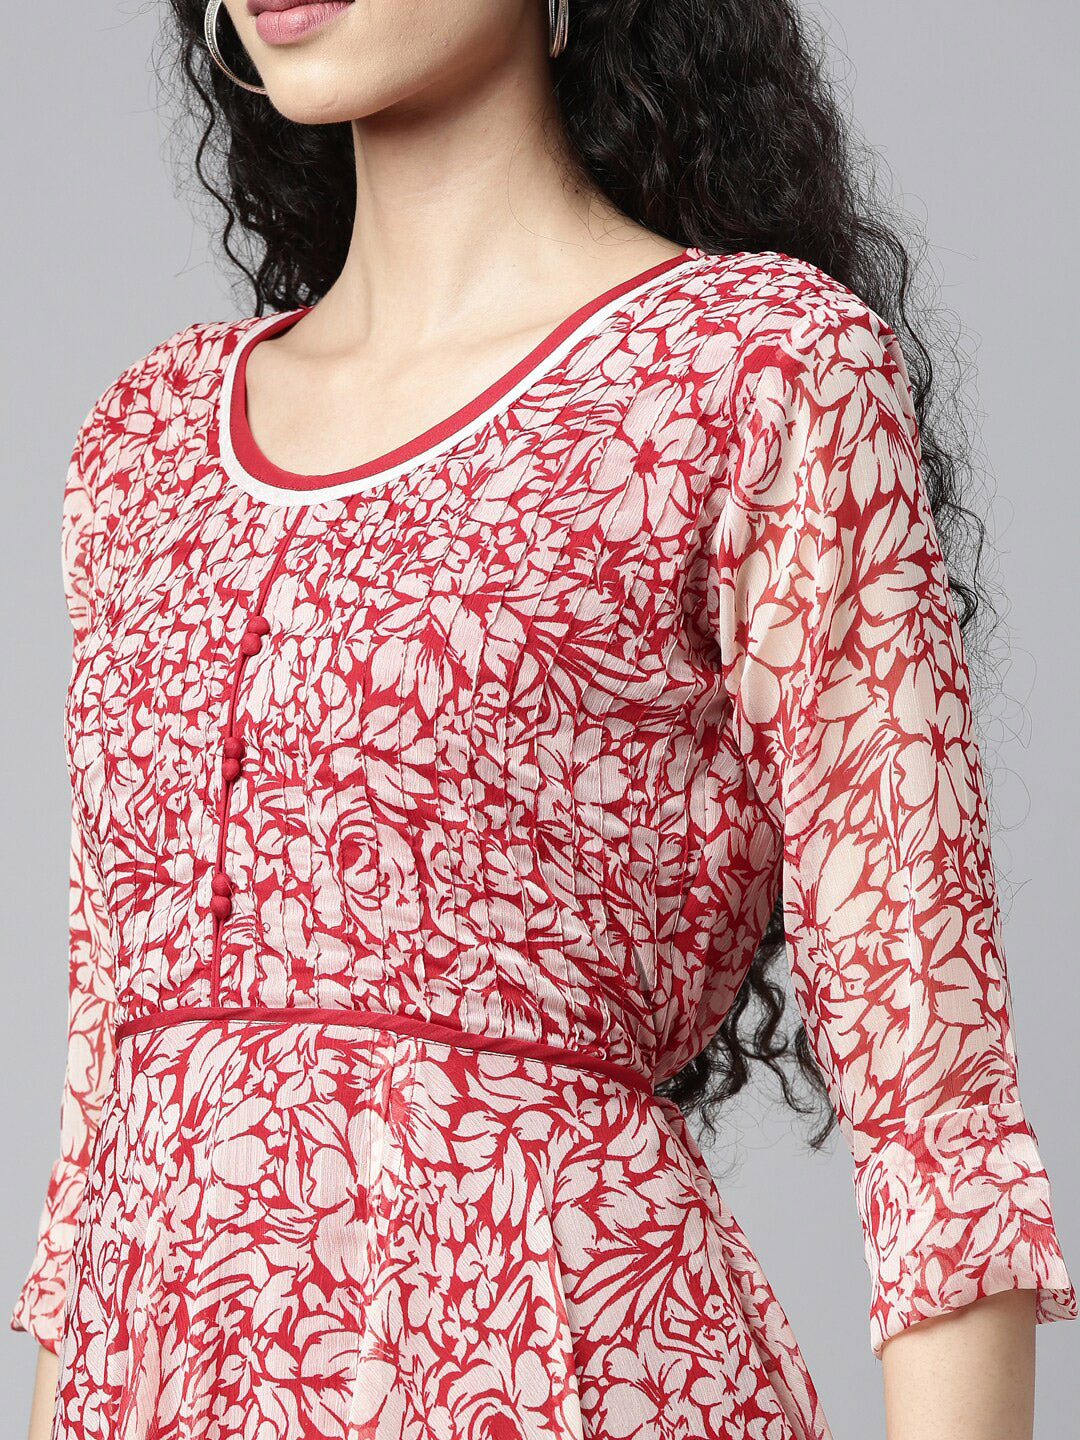 Souchii White & Red Floral Layered Chiffon Beautiful Midi Dress - Distacart